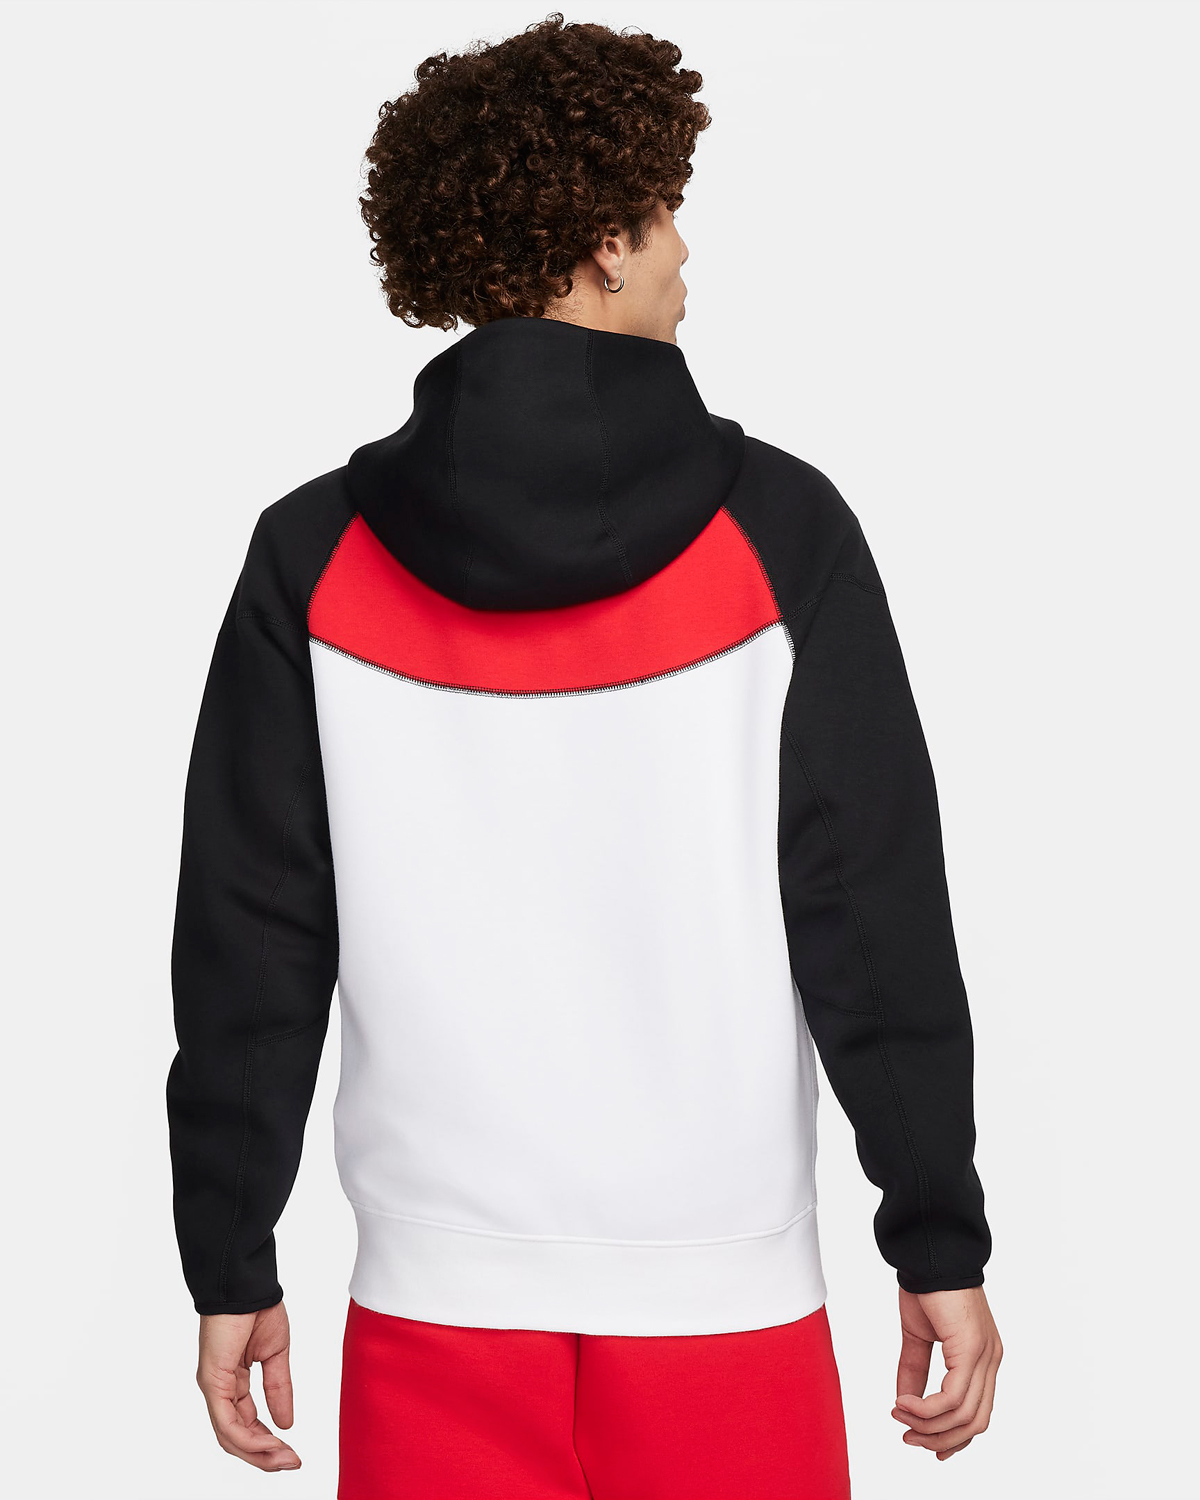 Nike-Tech-Fleece-Full-Zip-Windrunner-Hoodie-University-Red-Black-White-2